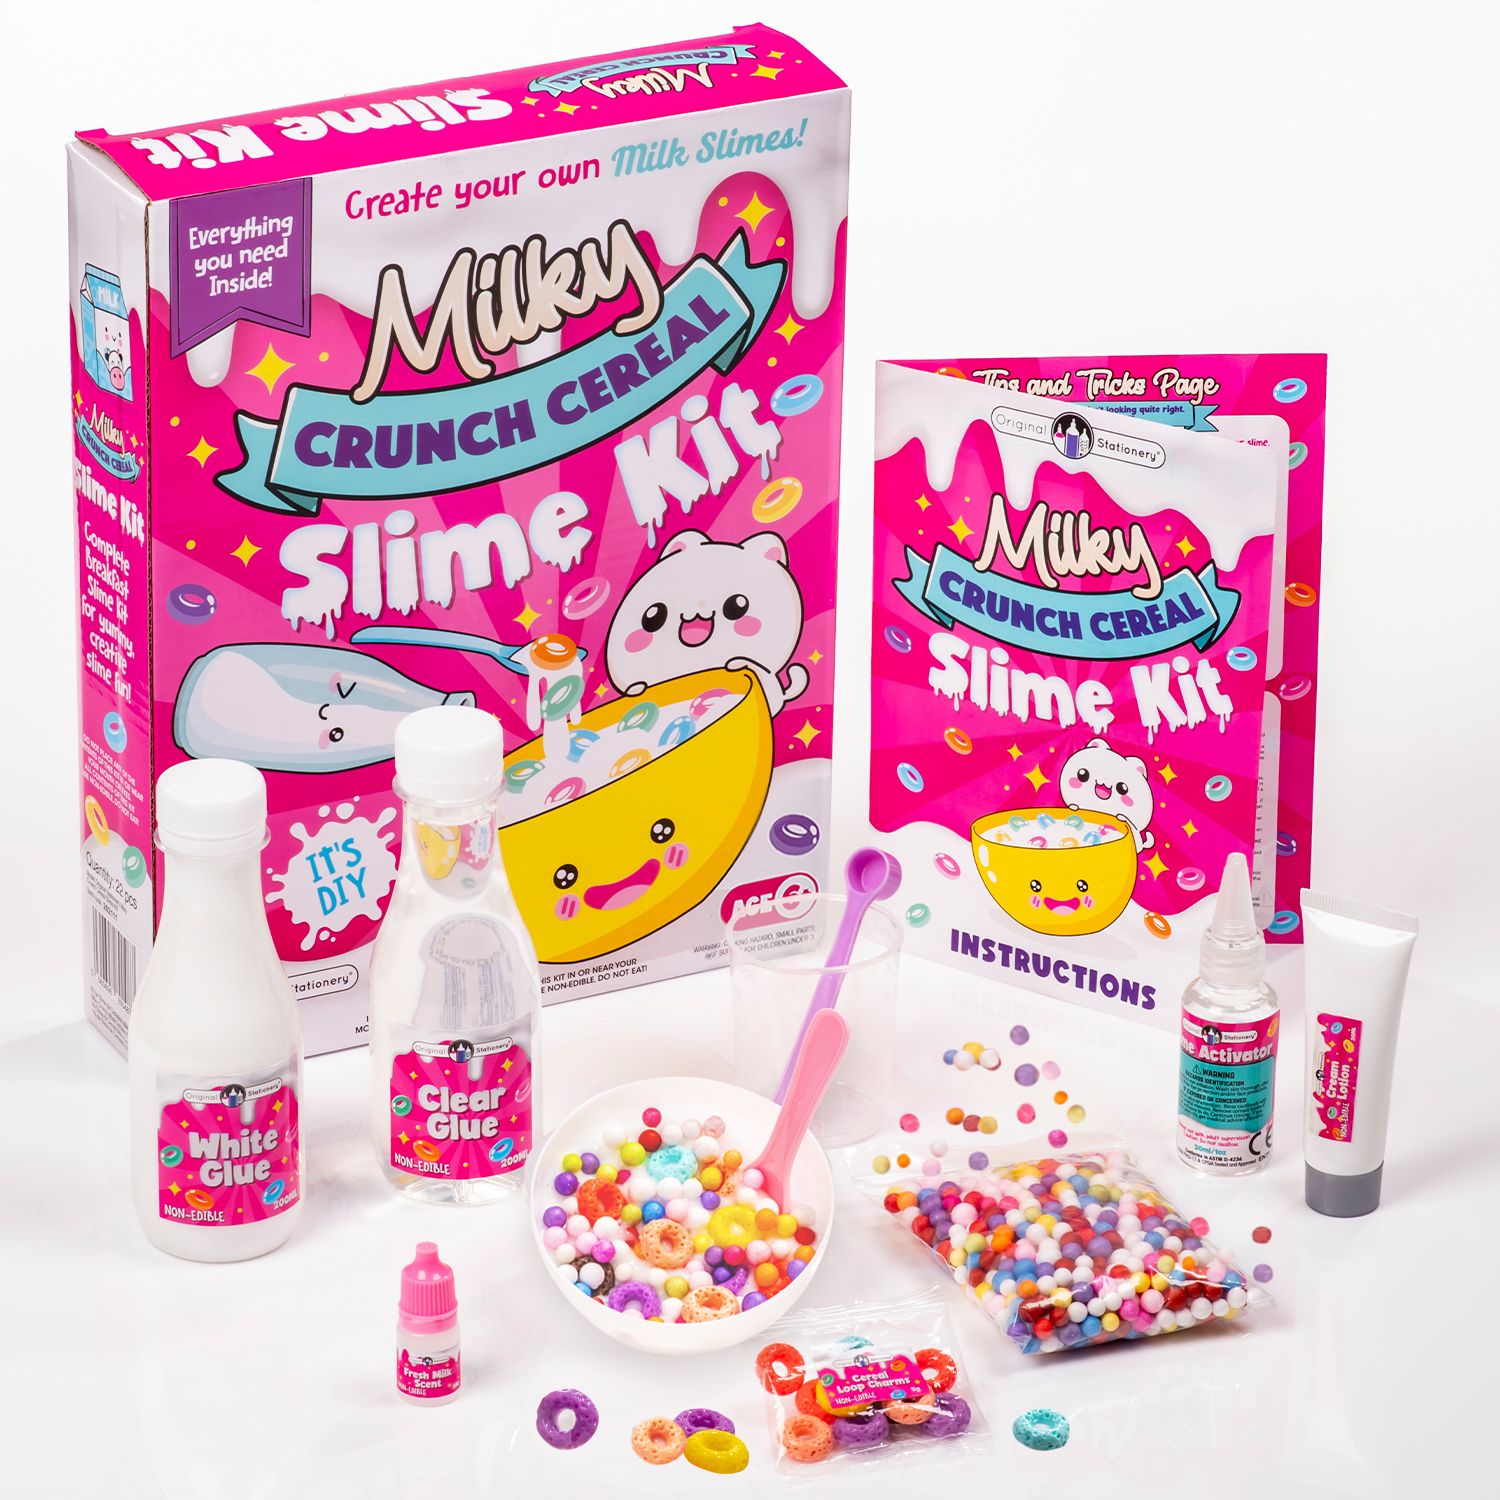 Milky Crunch Cereal Slime Kit – Original Stationery